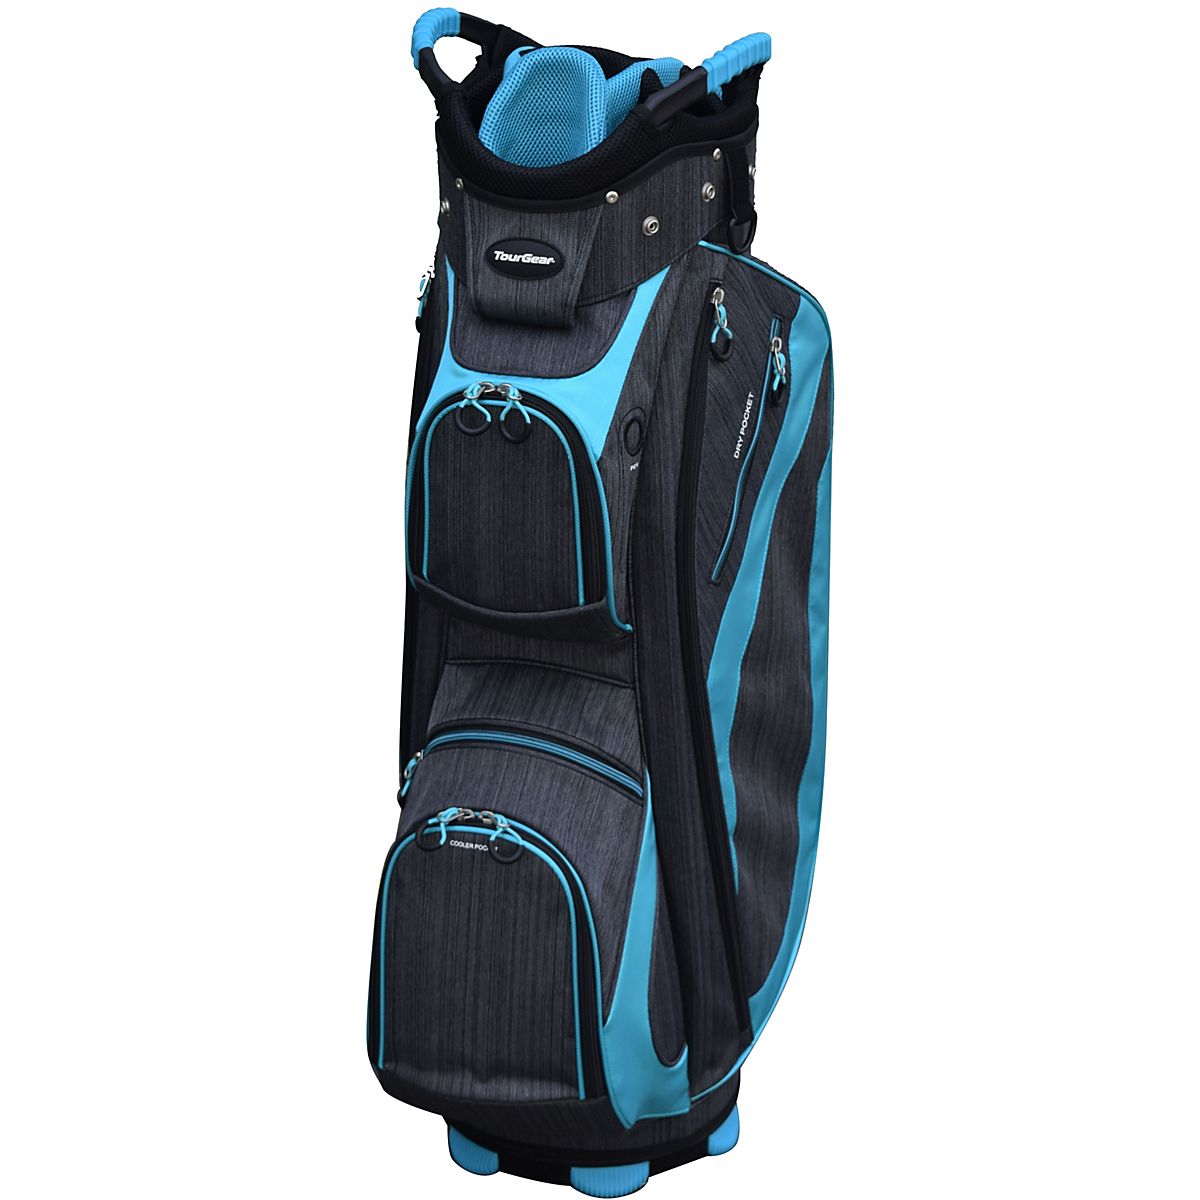 Tour Gear Deluxe Golf Cart Bag | Academy